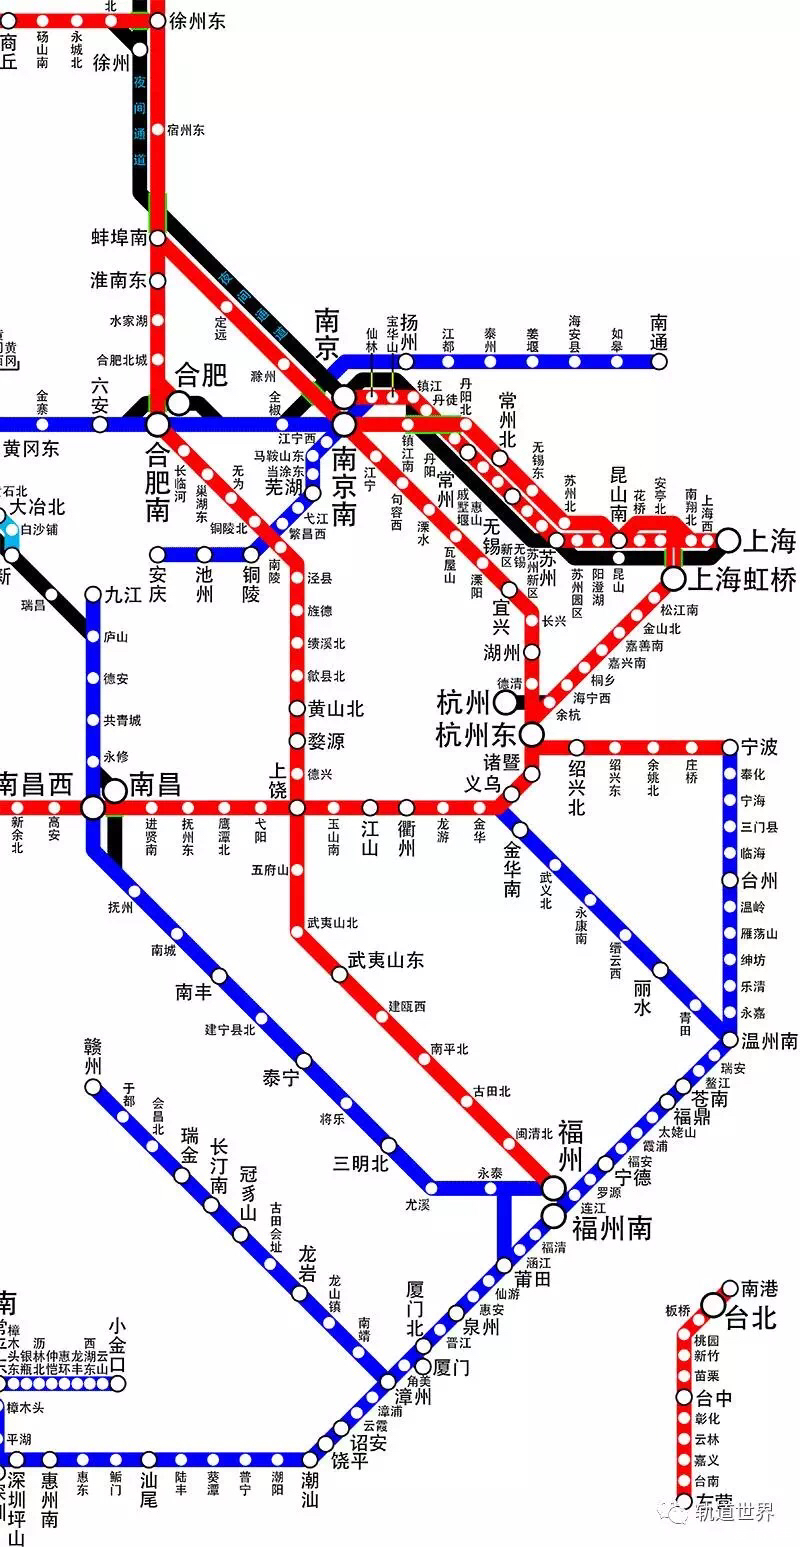 转最新版中国高速铁路运营线路图